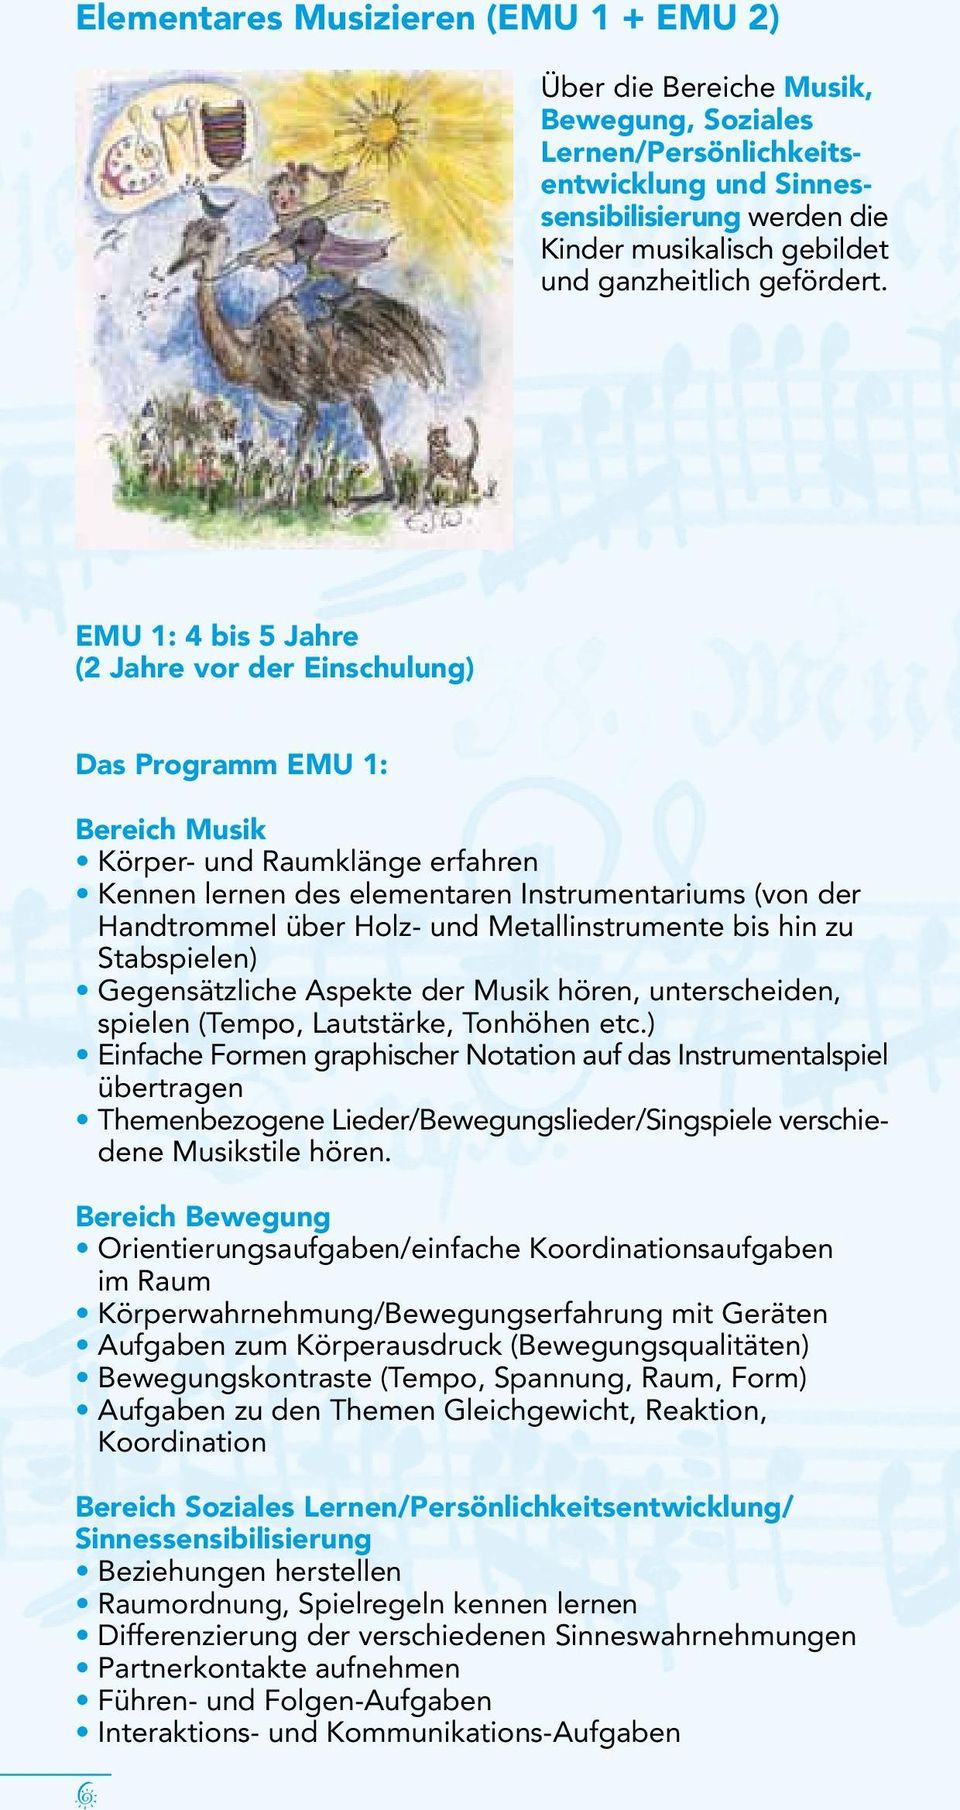 EMU 1: 4 bis 5 Jahre (2 Jahre vor der Einschulung) Das Programm EMU 1: Bereich Musik Körper- und Raumklänge erfahren Kennen lernen des elementaren Instrumentariums (von der Handtrommel über Holz- und